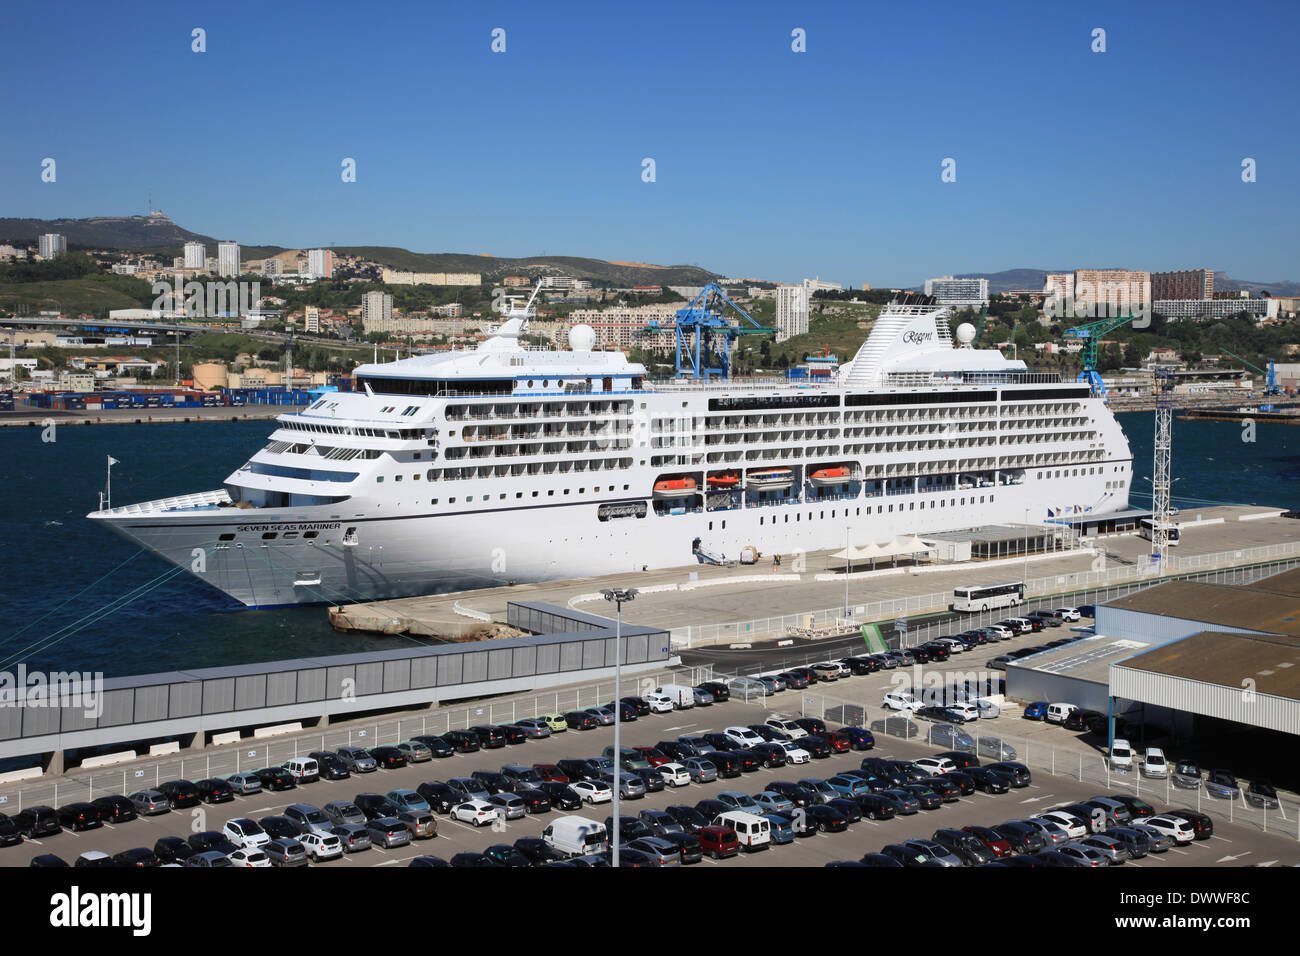 Navire de croisière de luxe Seven Seas Mariner mv à quai à Port Marseille France Banque D'Images